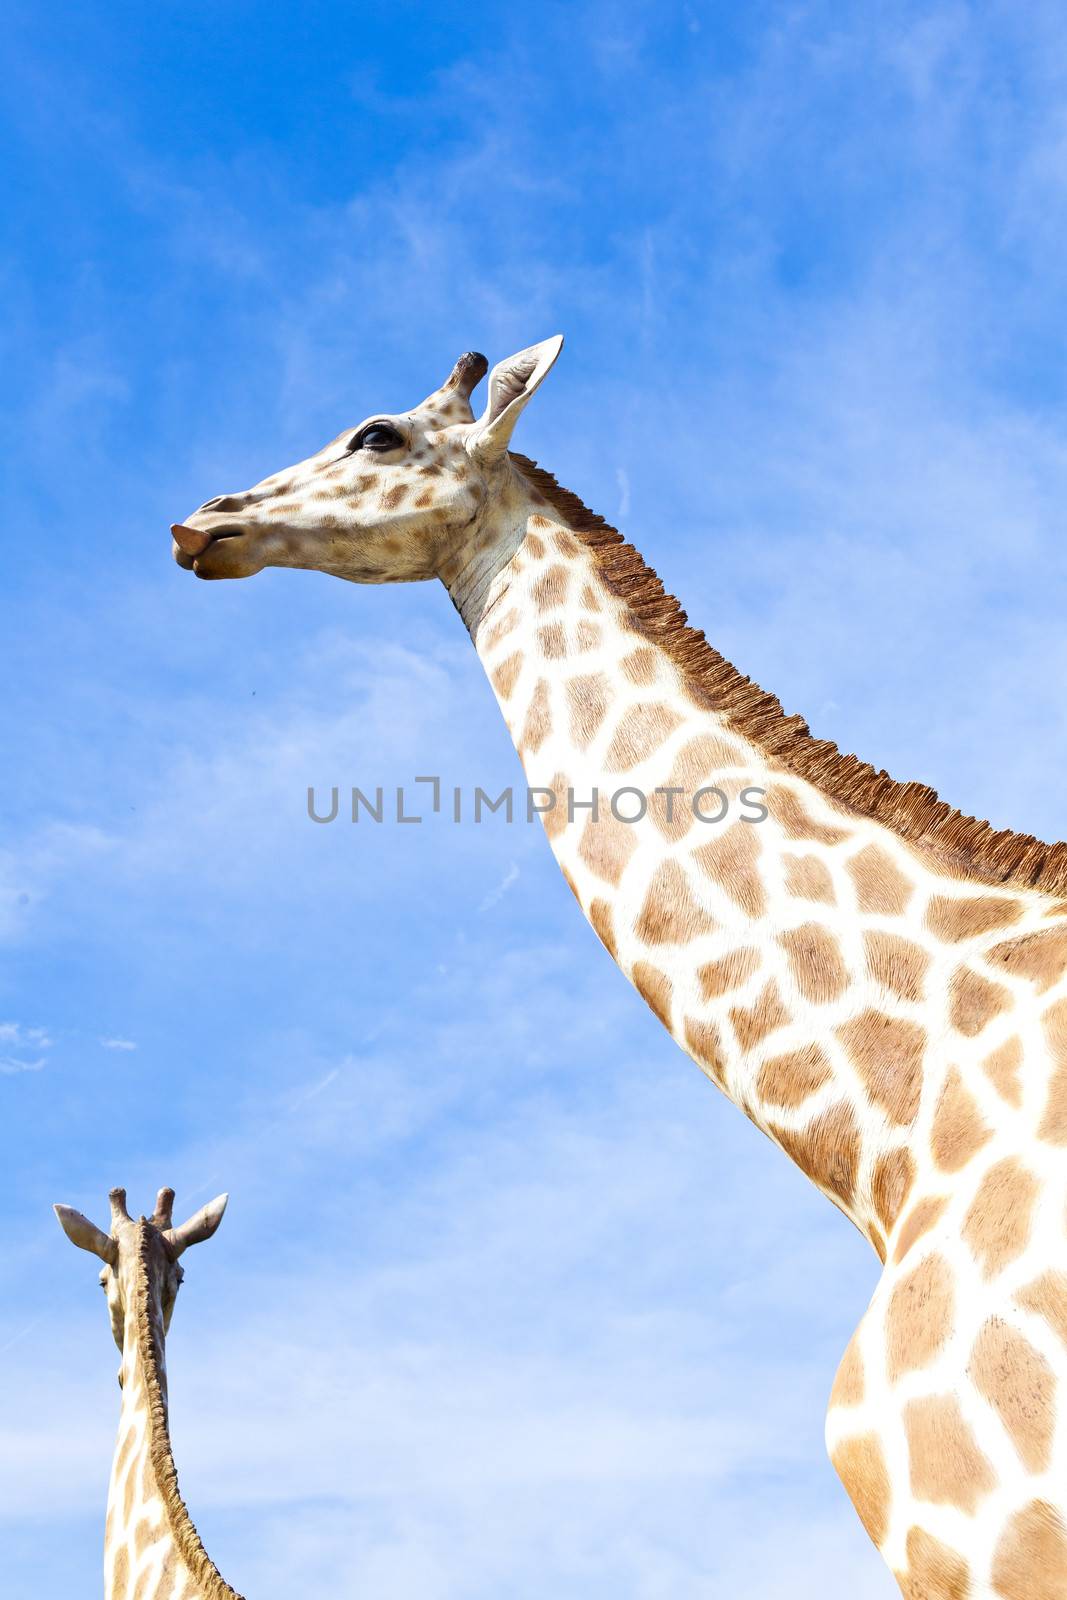 Giraffe at the zoo by kawing921